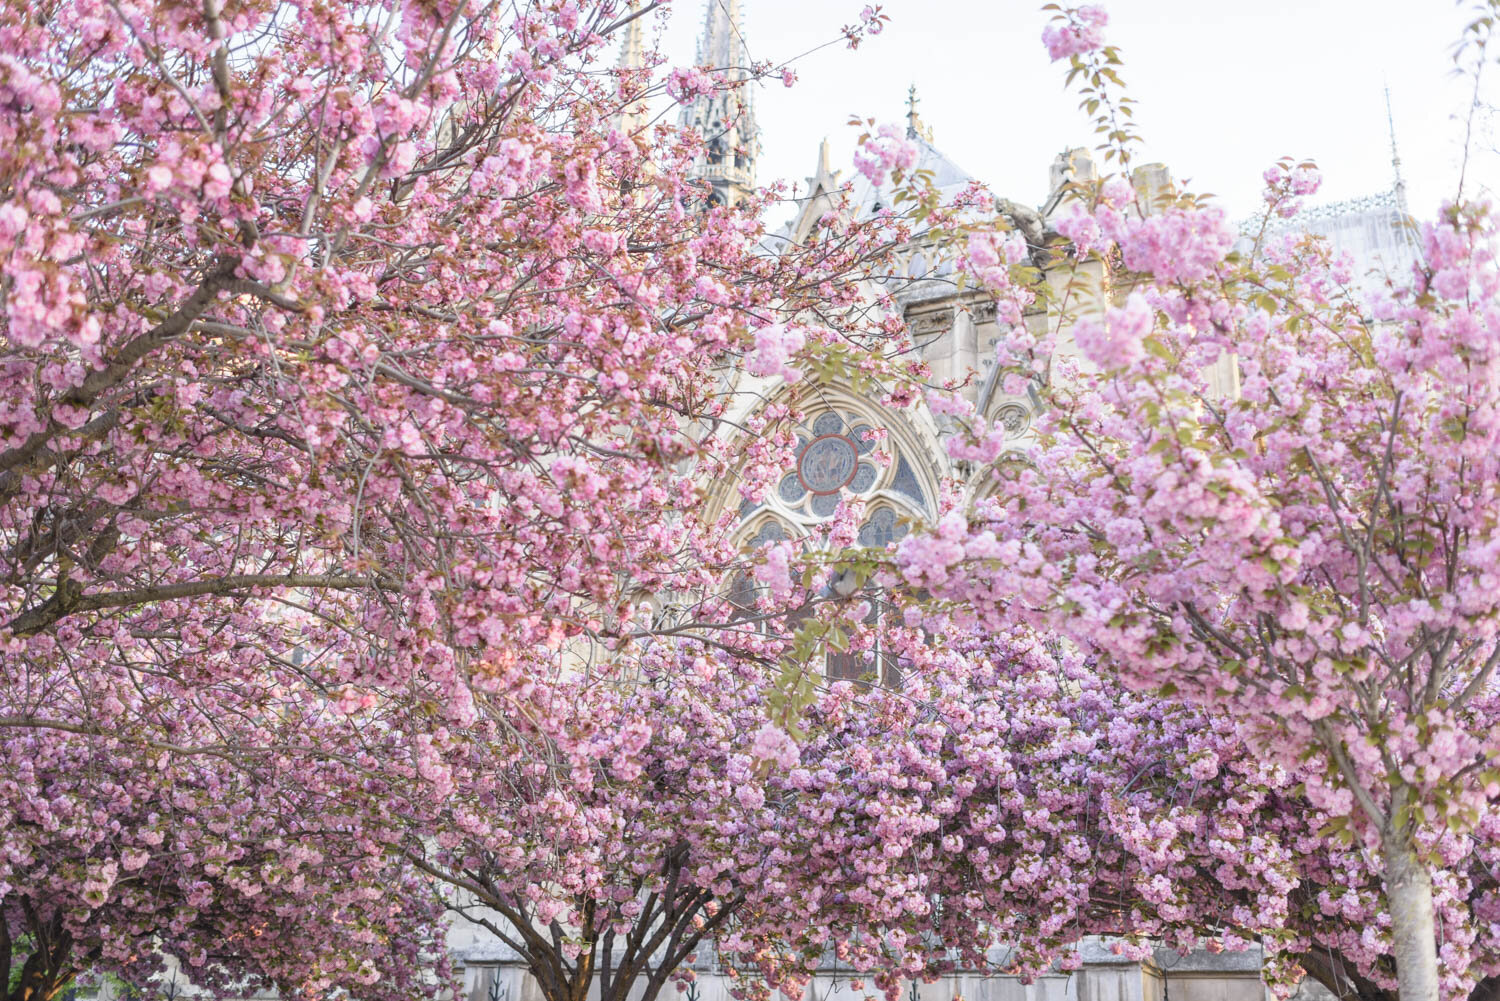 Notre Dame through Cherry Blossoms